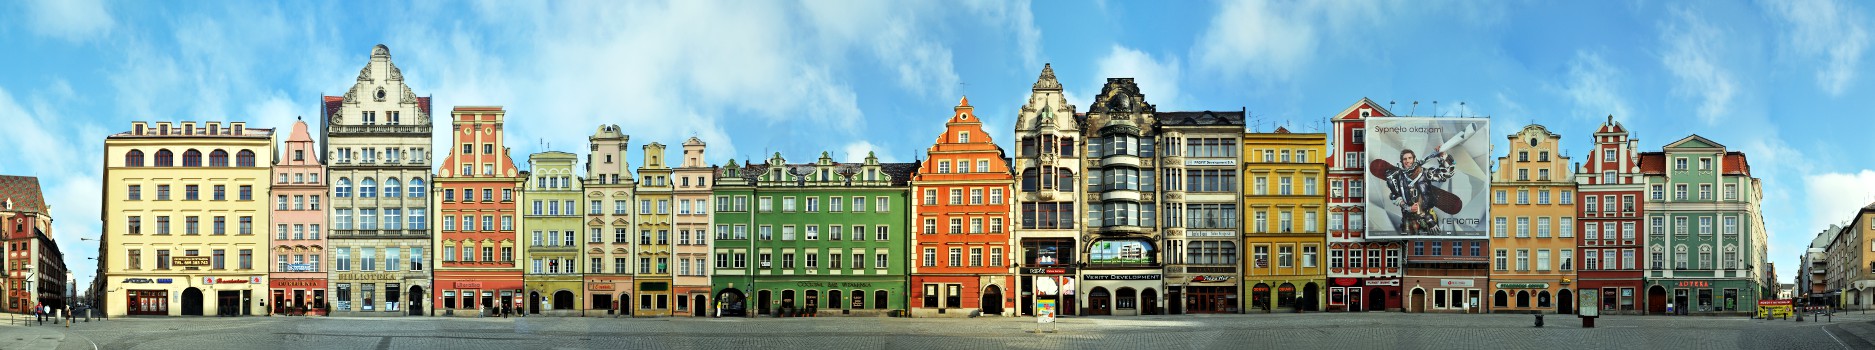 Wroclaw Rynek Panorama